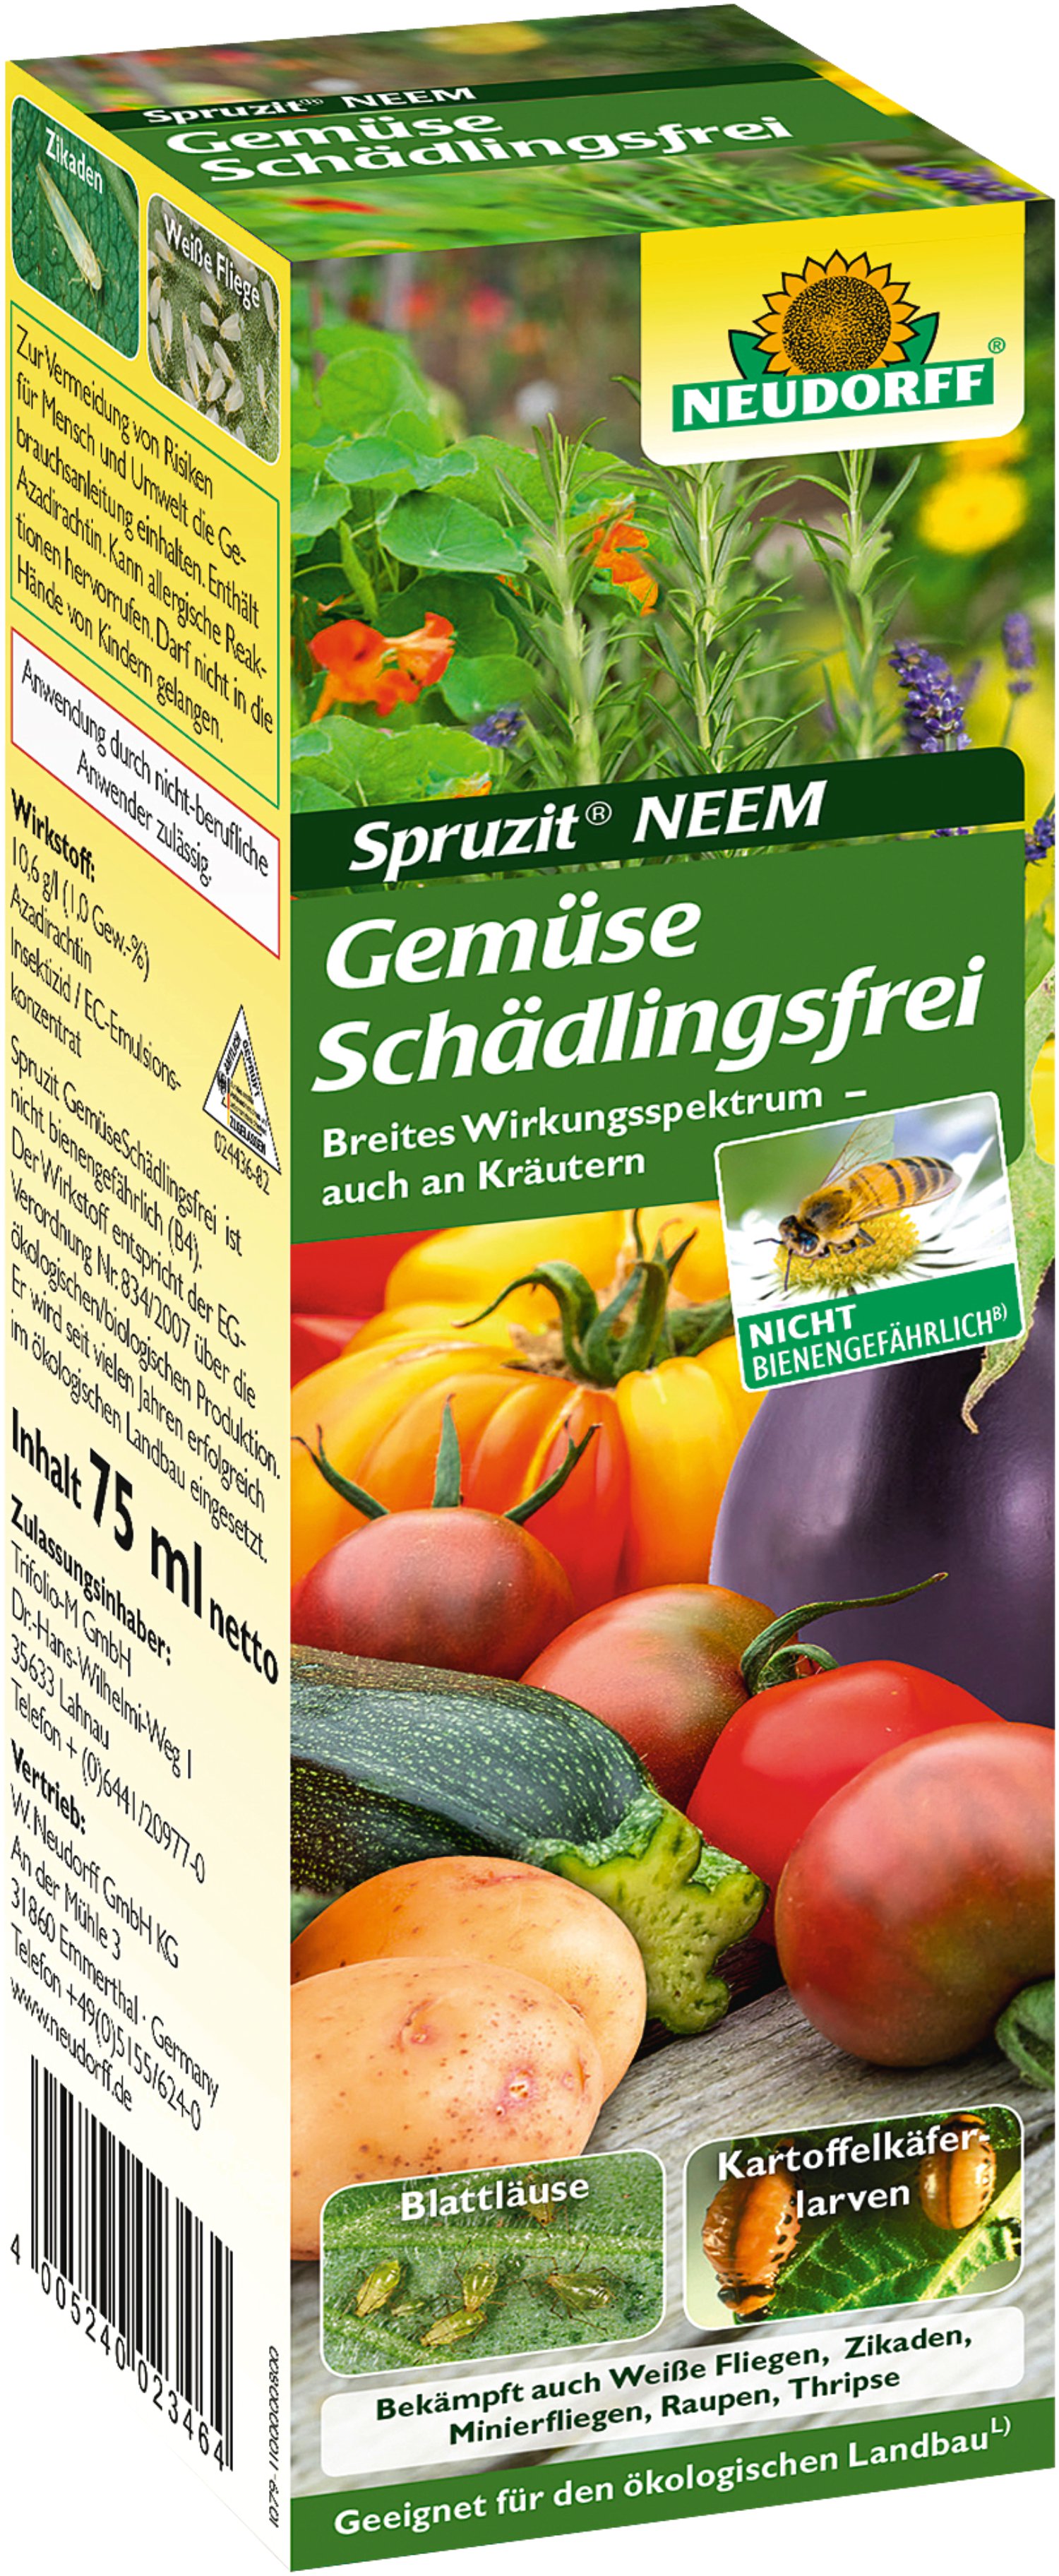 NEUDORFF® Spruzit NEEM GemüseSchädlingsfrei 75 ml